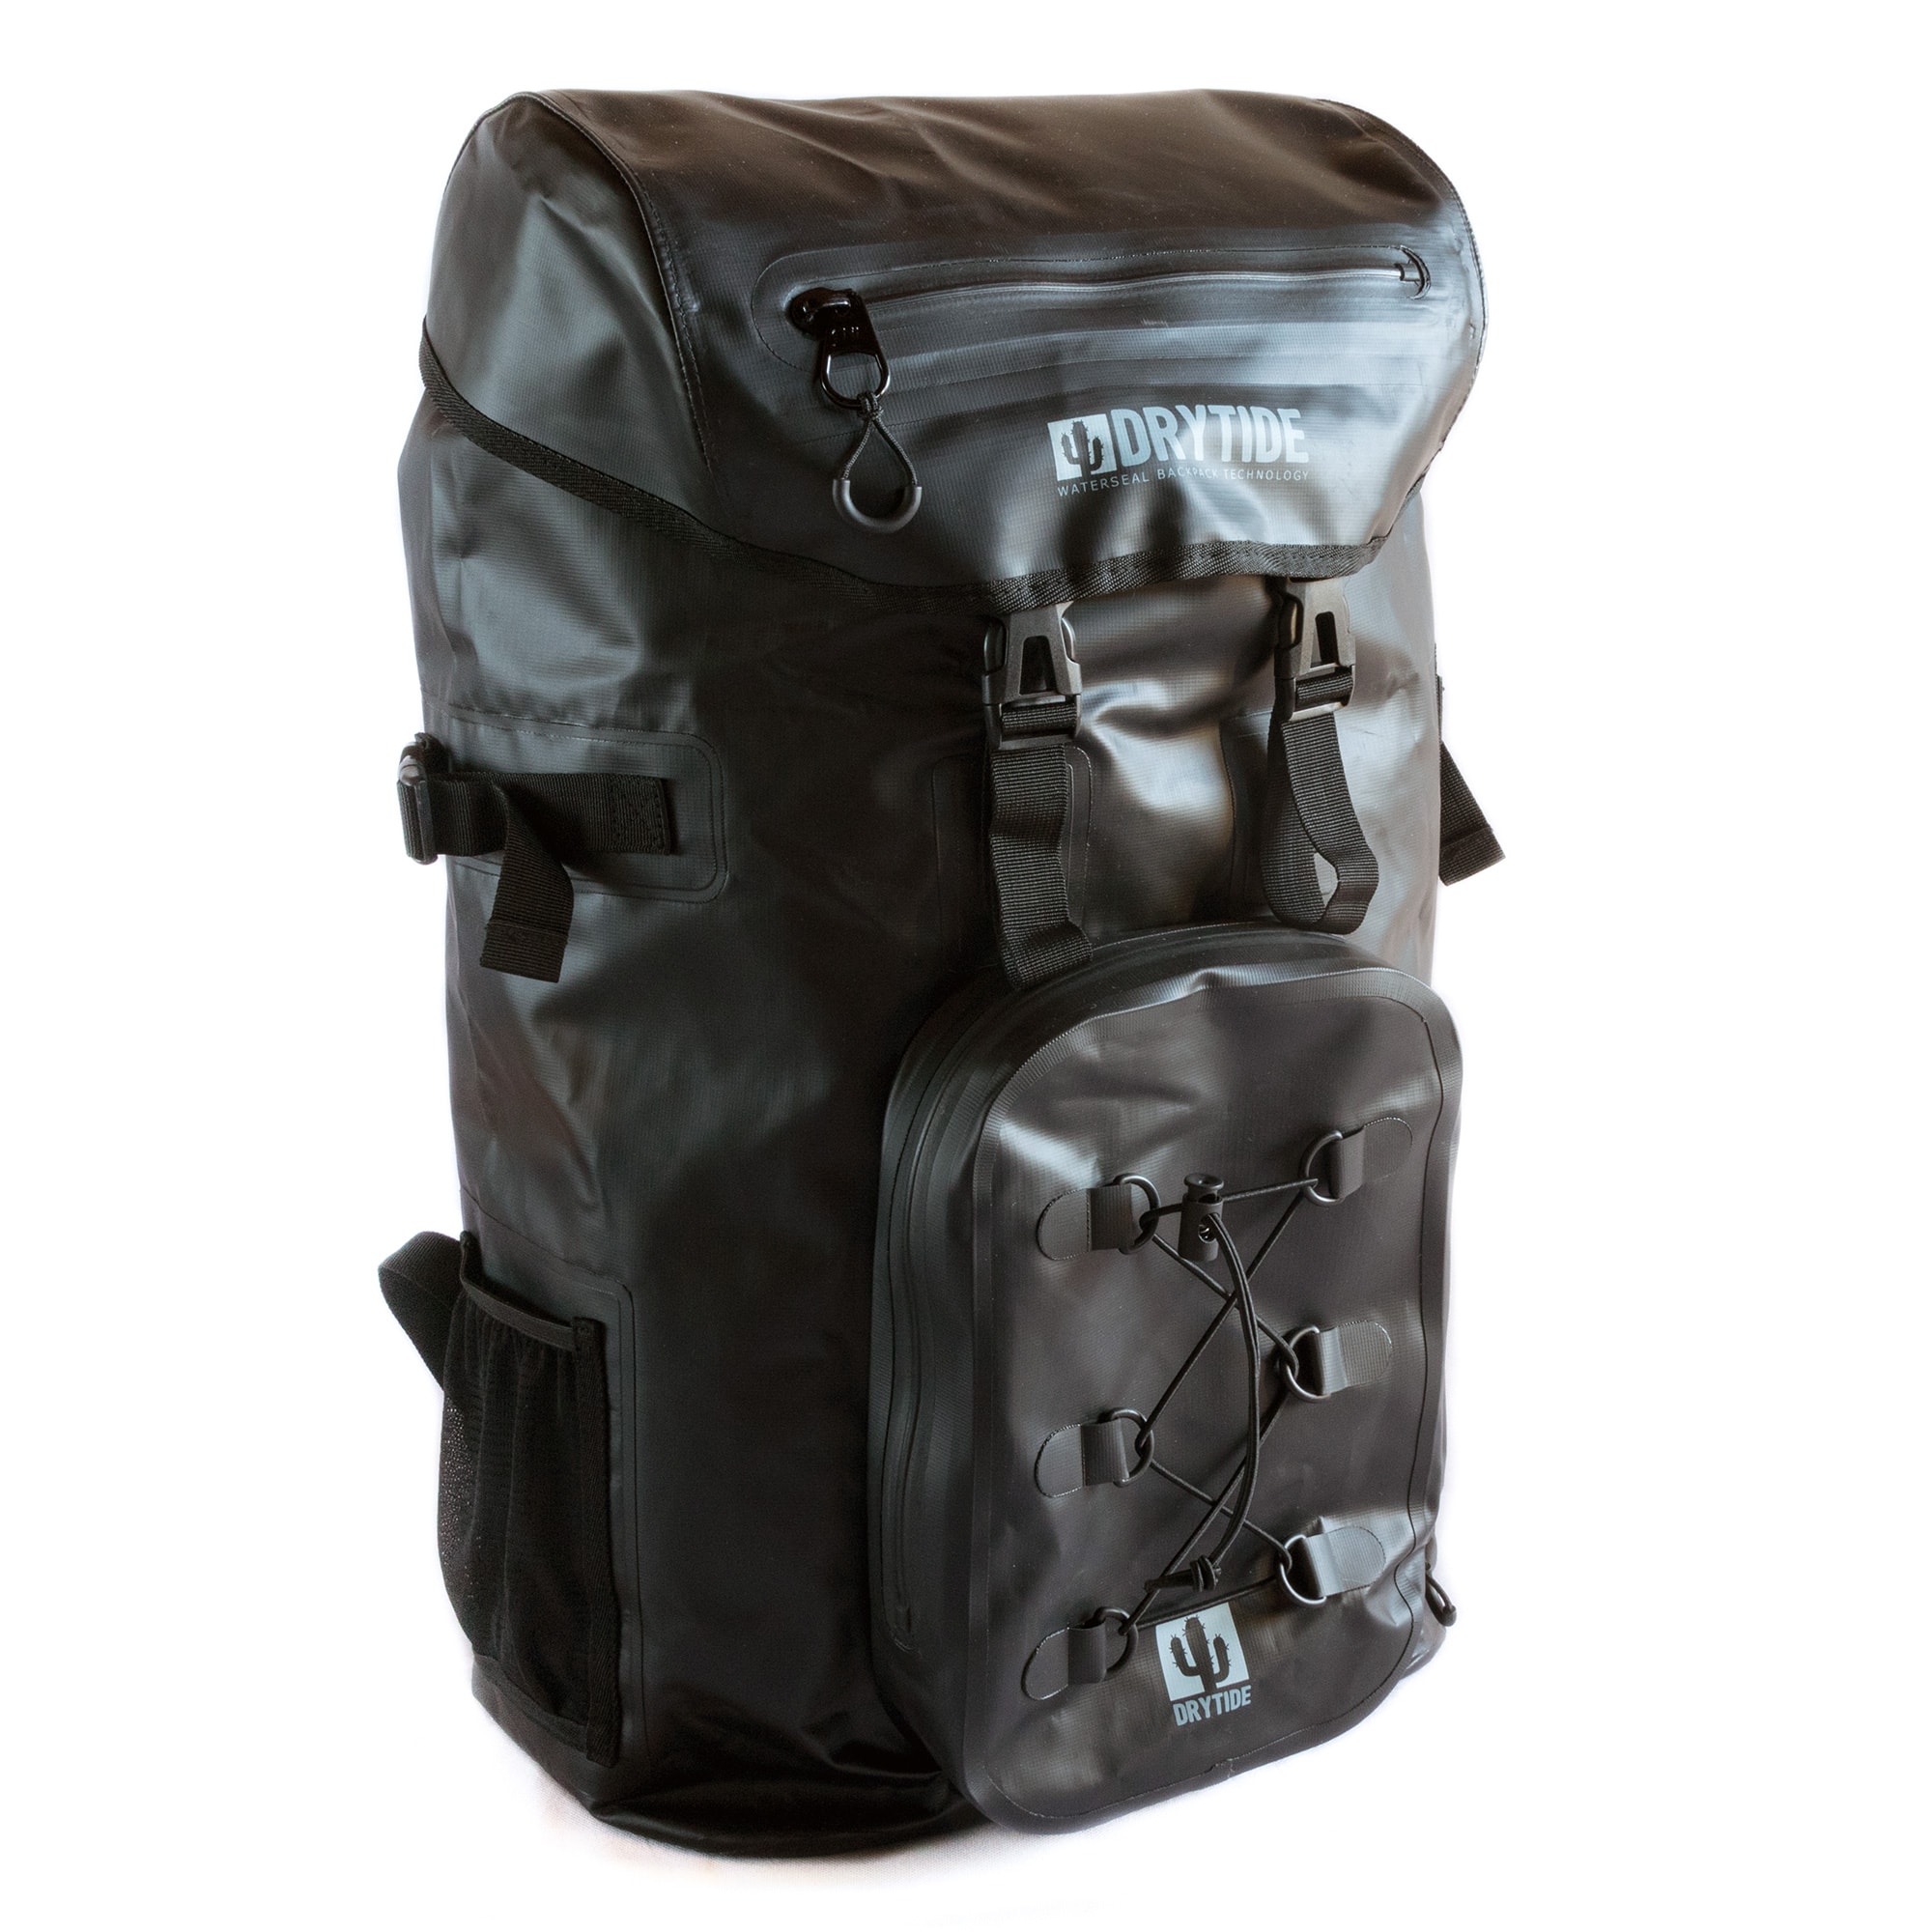 DryTide waterproof travel backpack 50L